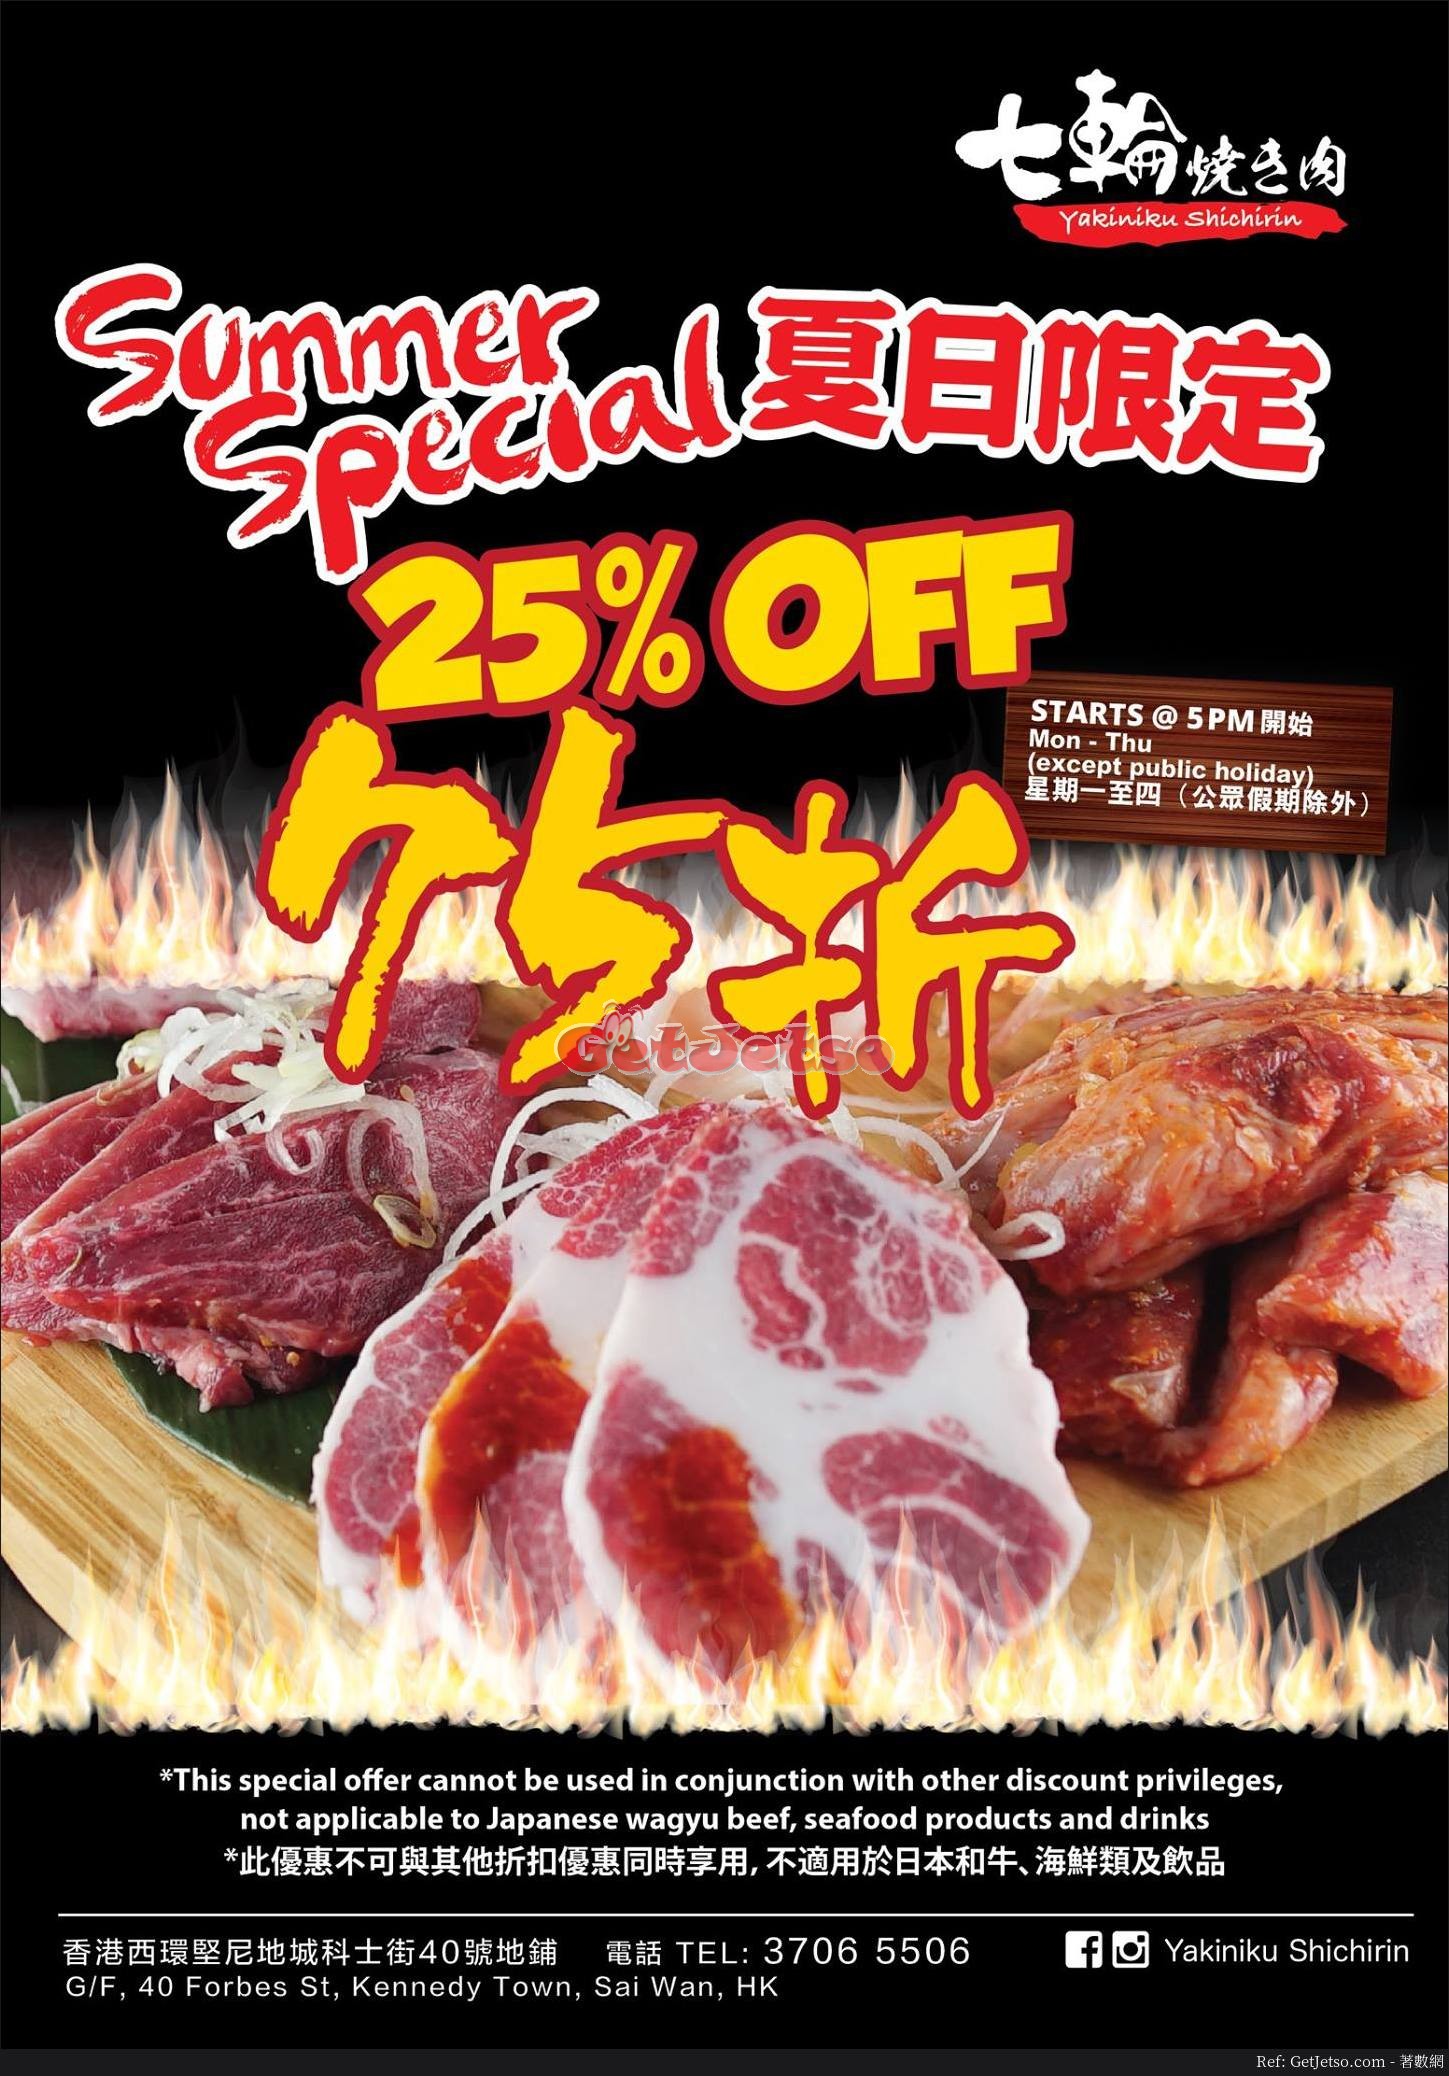 七輪燒肉Yakiniku Shichirin 75折優惠(17年6月28日起)圖片1